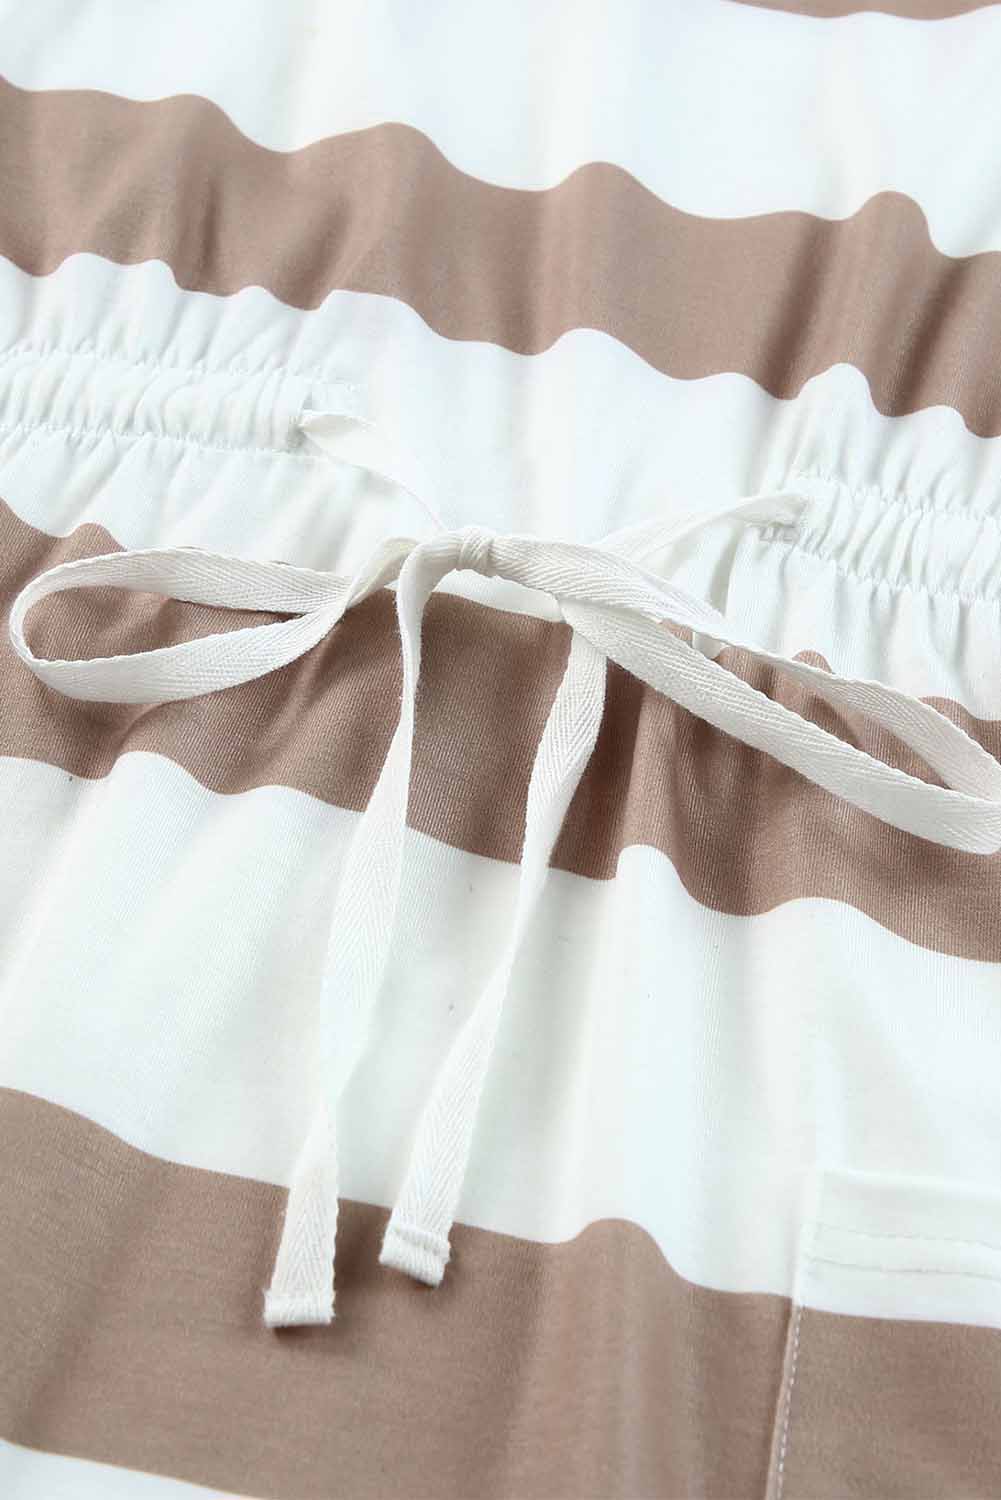 Robe rayée blanche en dentelle au crochet, manches courtes, cordon de serrage